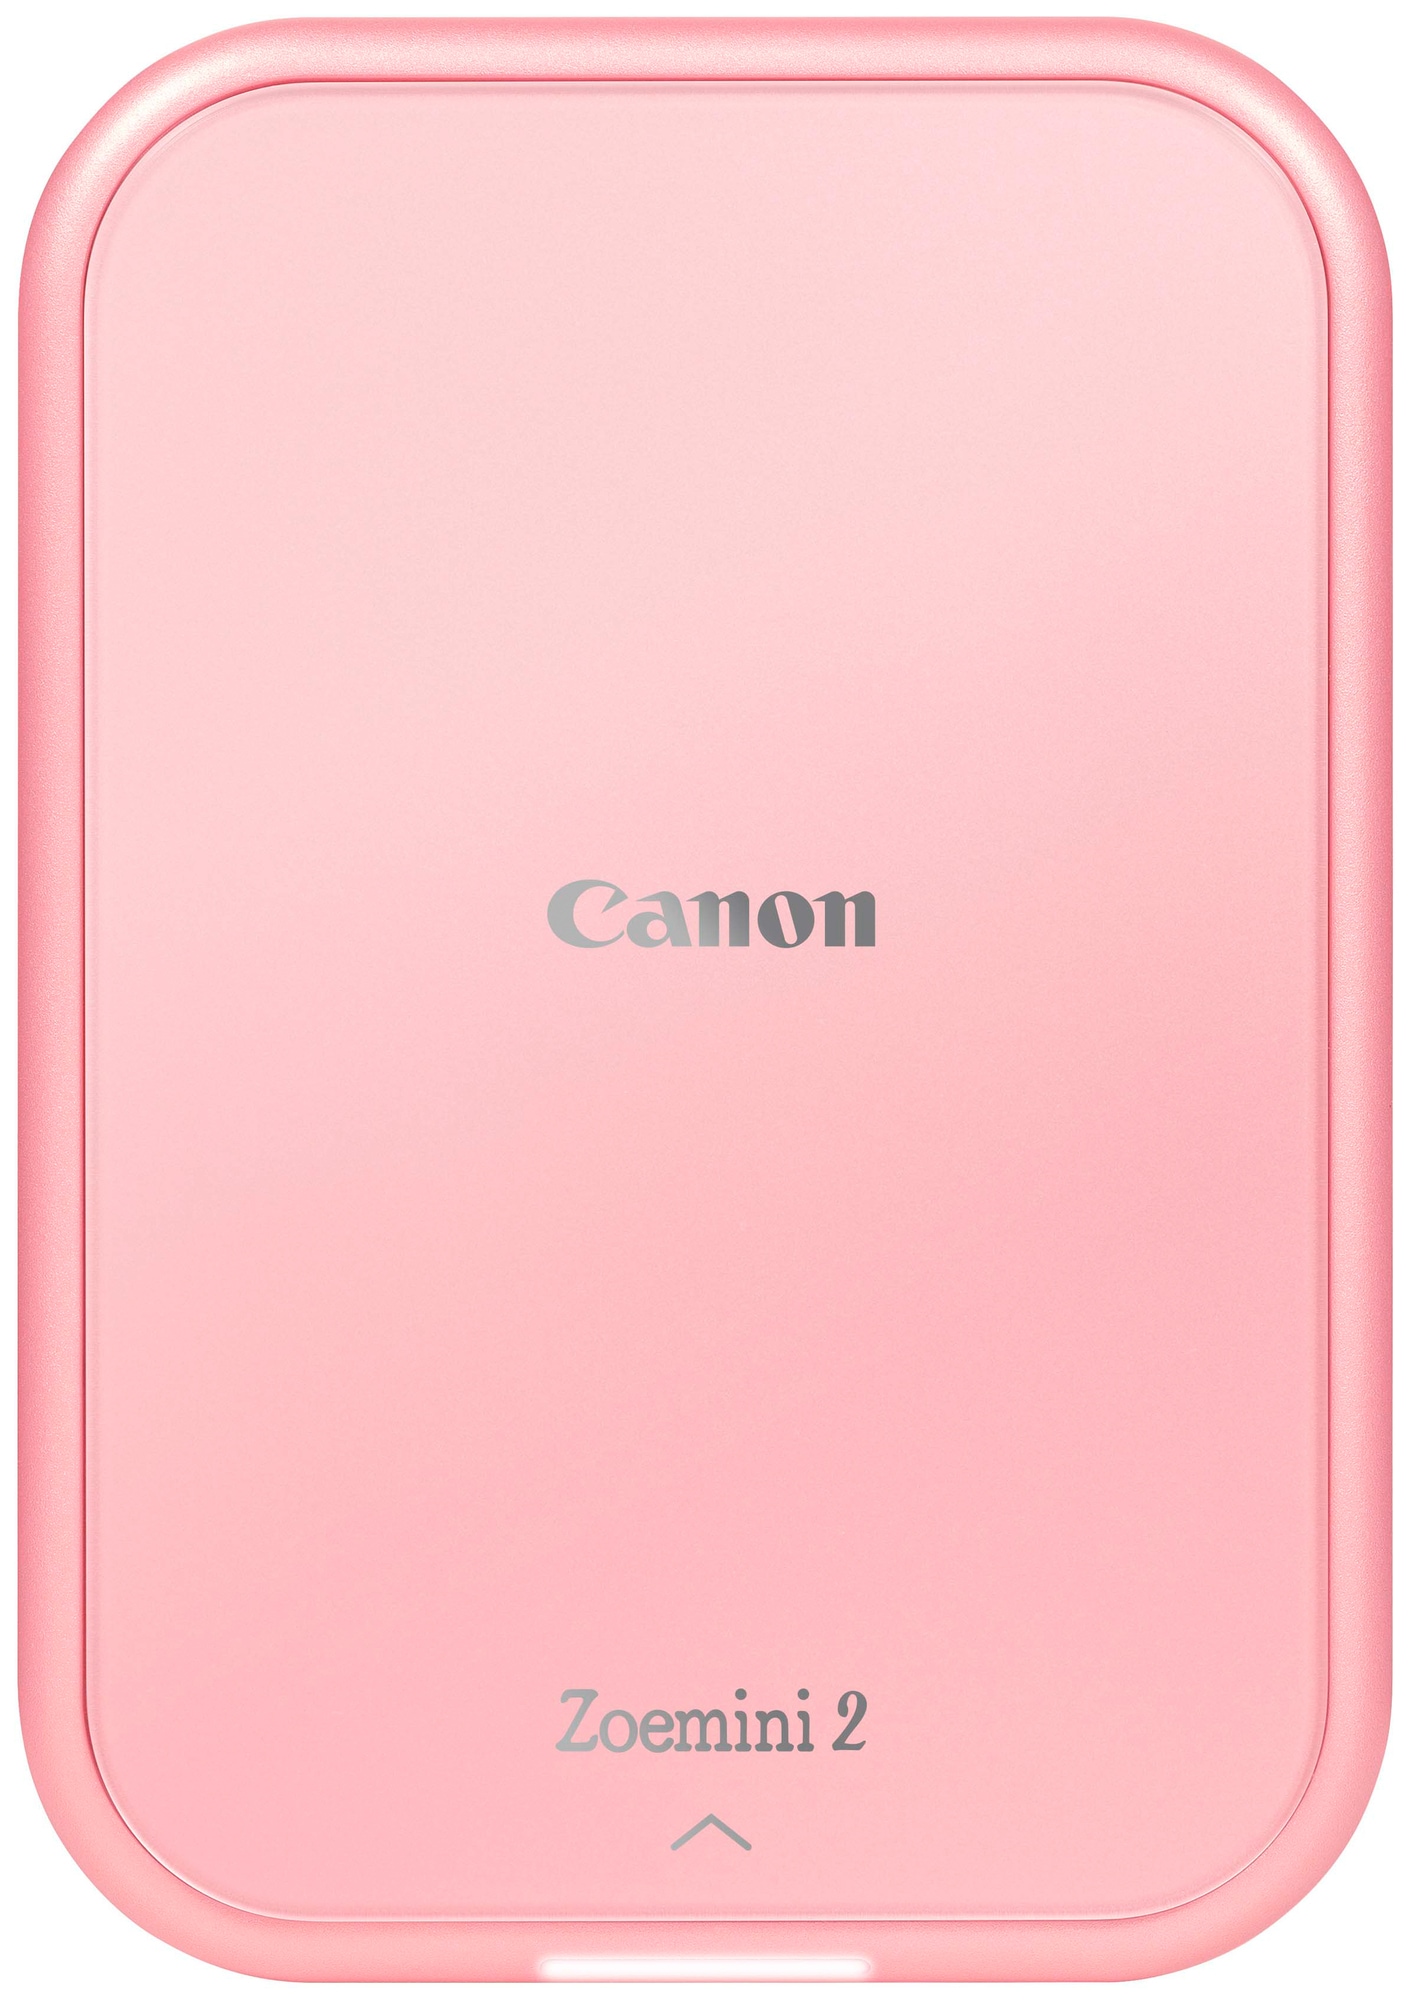 Canon Zoemini 2 mobil fotoskriver (roségull) - Elkjøp